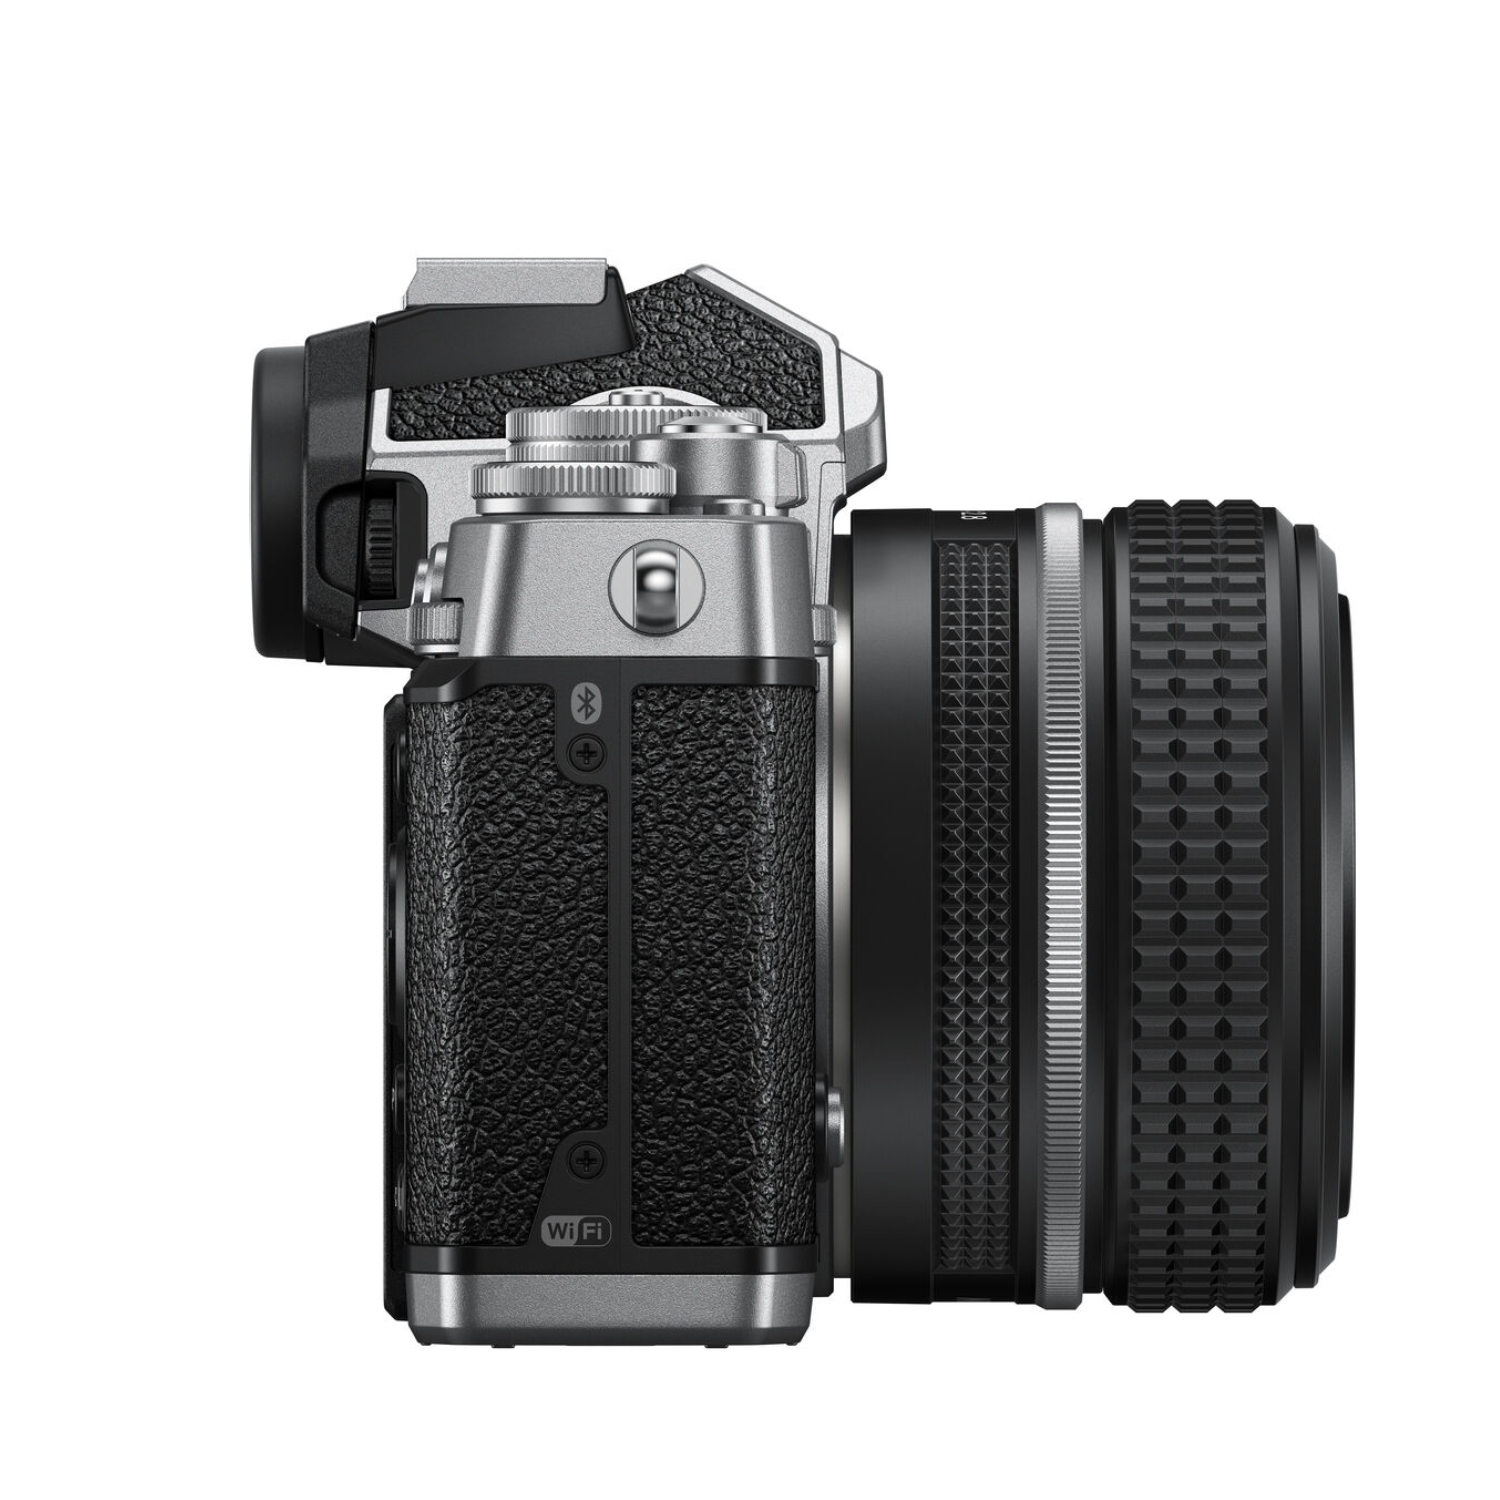 Caméra numérique sans miroir Nikon Z FC avec objectif de 28 mm